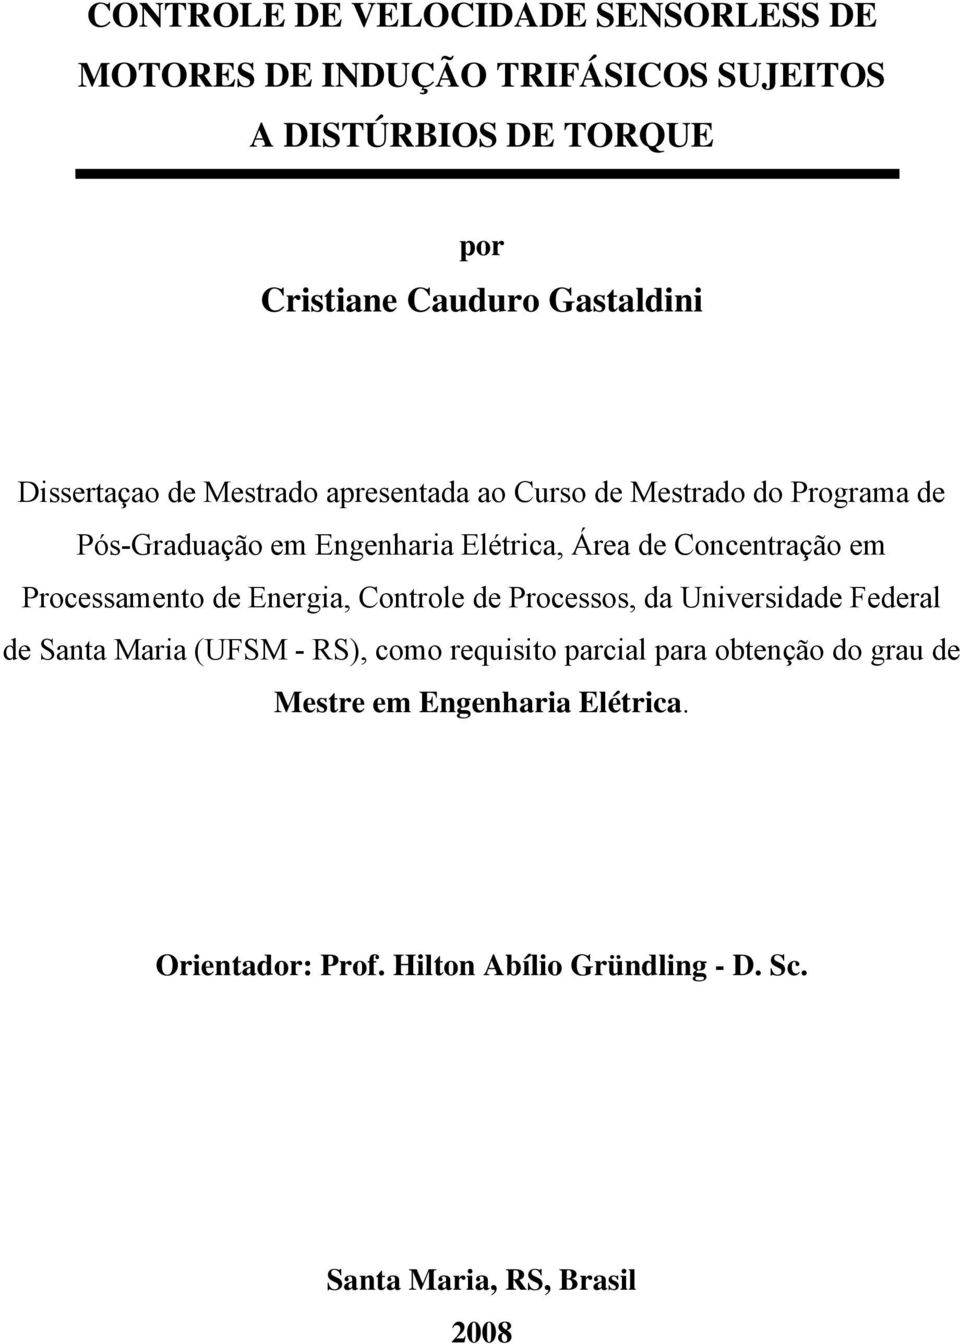 Concentação em Poceamento de Enegia, Contole de Poceo, da Univeidade Fedeal de Santa Maia (UFSM - RS), como equiito